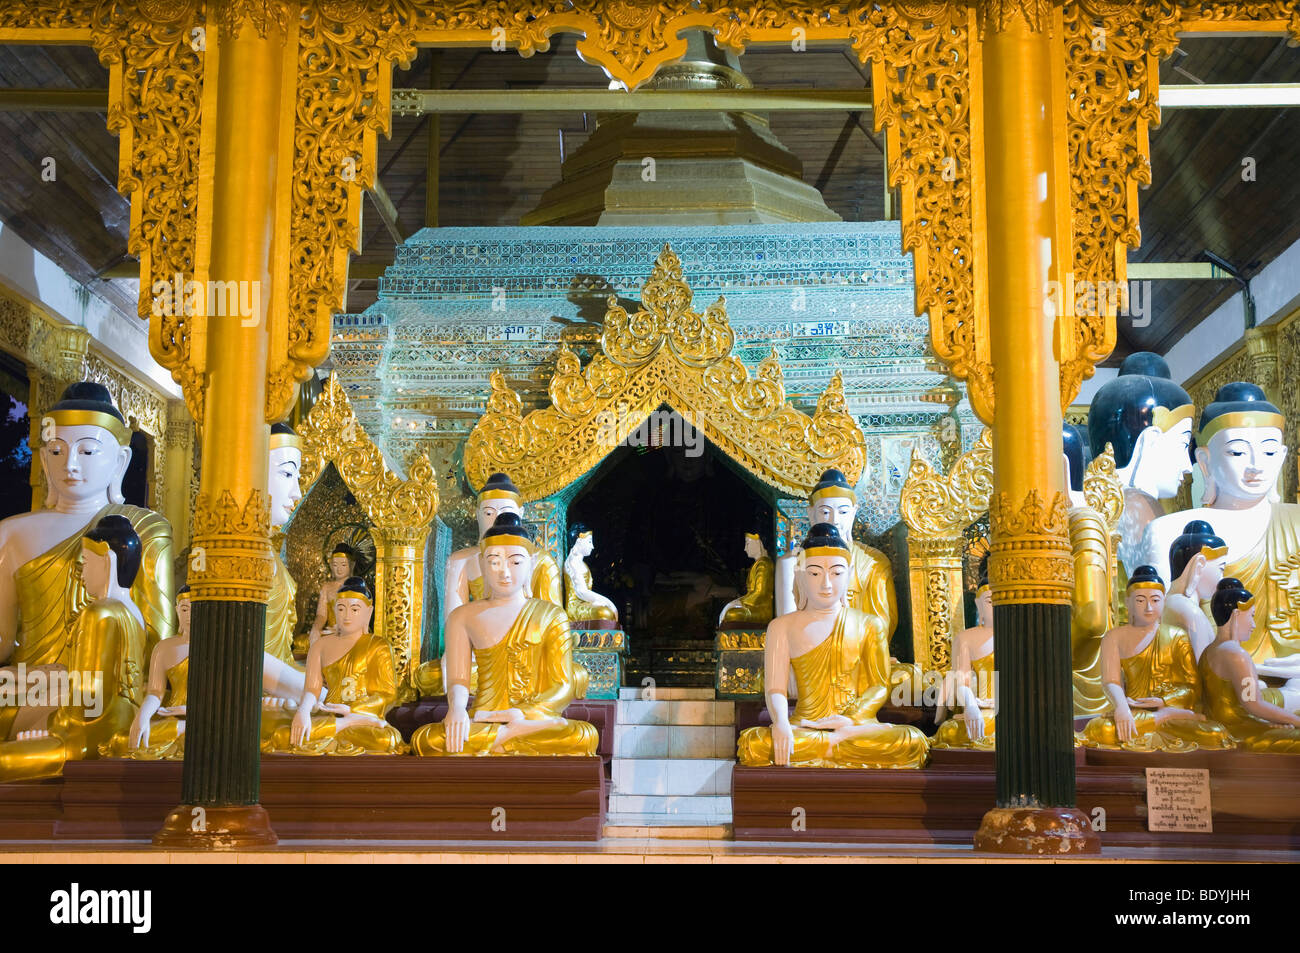 Buddha figures, Shwedagon Pagoda, Buddhist temple, Rangoon, Yangon, Burma, Burma, Myanmar, Asia Stock Photo